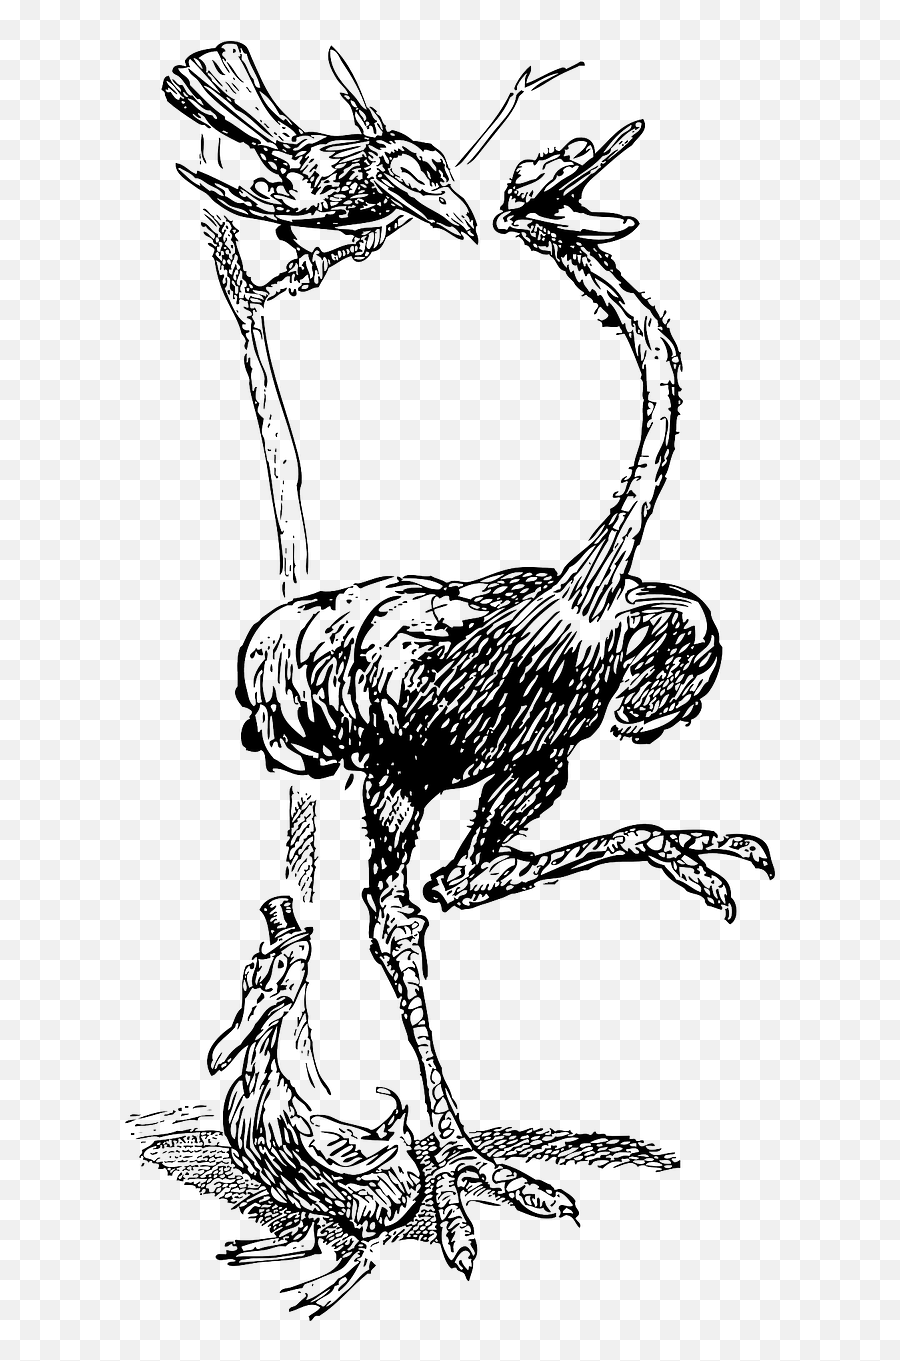 Crow Perched Bird Ostrich Together - Crow Vs Ostrich Emoji,Raven Bird Emoji